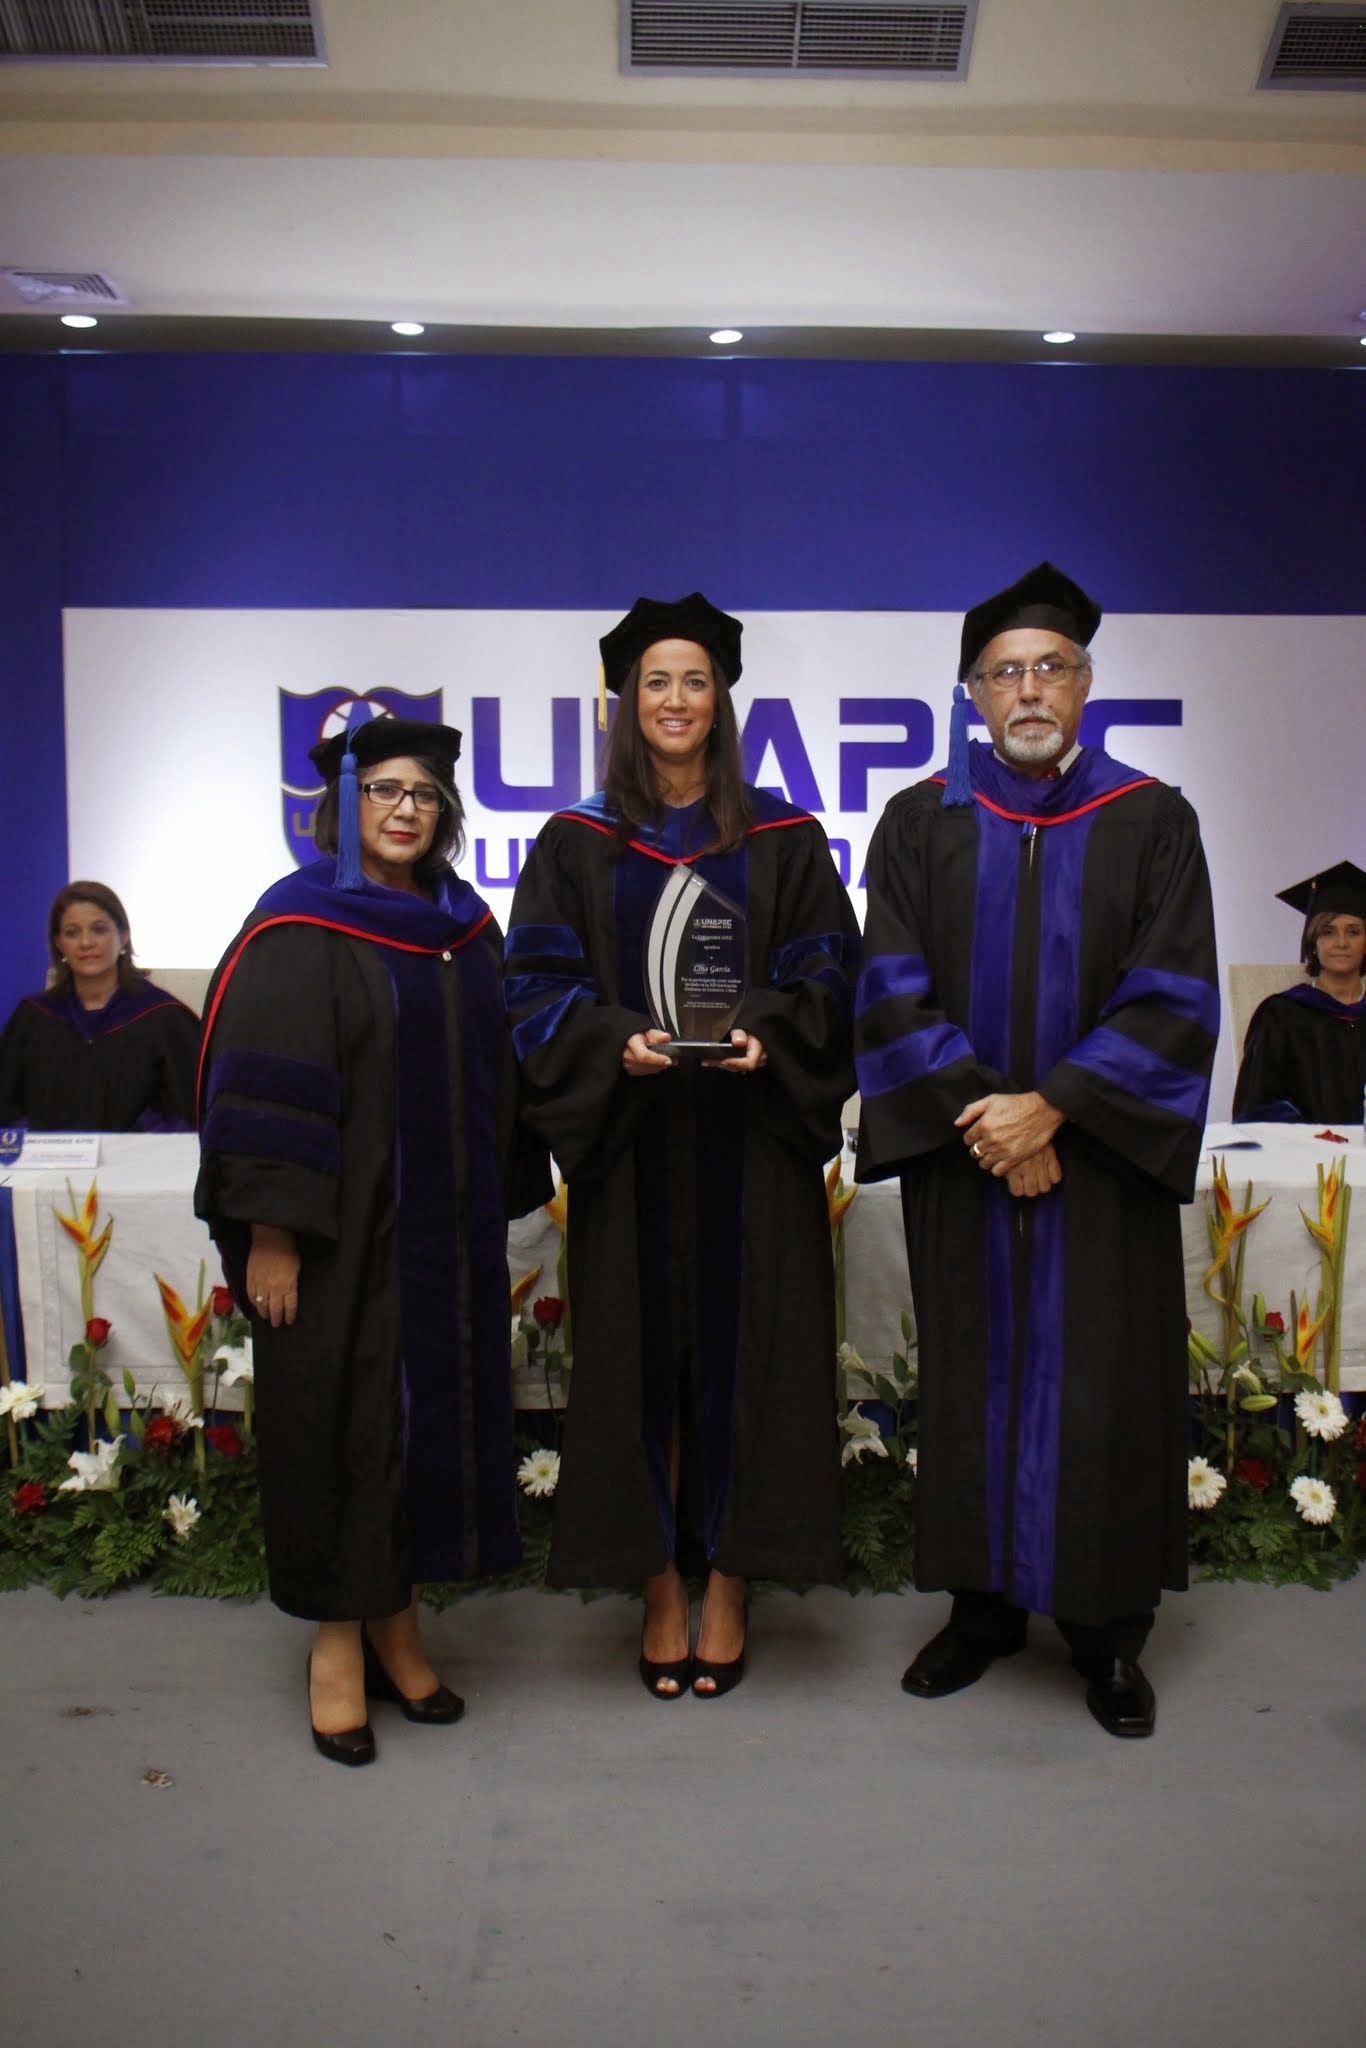 Dalma Crúz Mirabal, Vicerrectora de Graduados; Lina María García Almanzar, oradora invitada y Carlos Sangiovanni, Vicerrector Académico